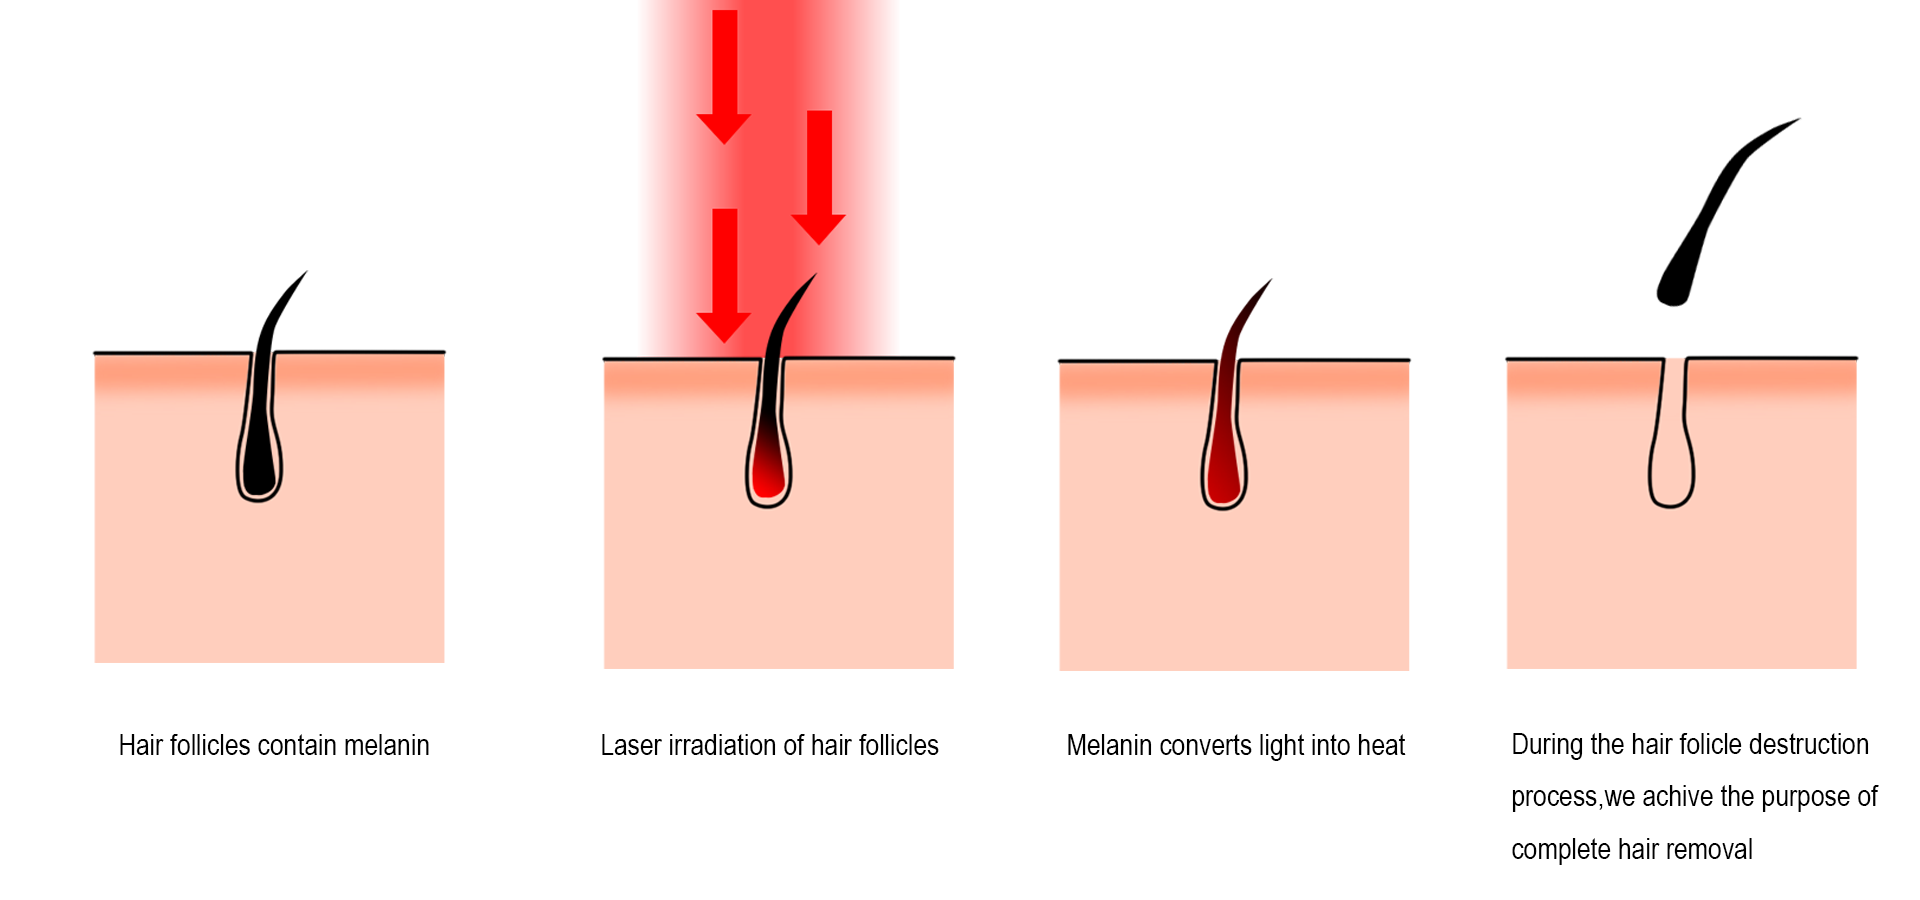 لیزر سے بالوں کو ہٹانے کی پیشرفت - لیزر بالوں کو مؤثر طریقے سے کیسے ہٹاتا ہے۔